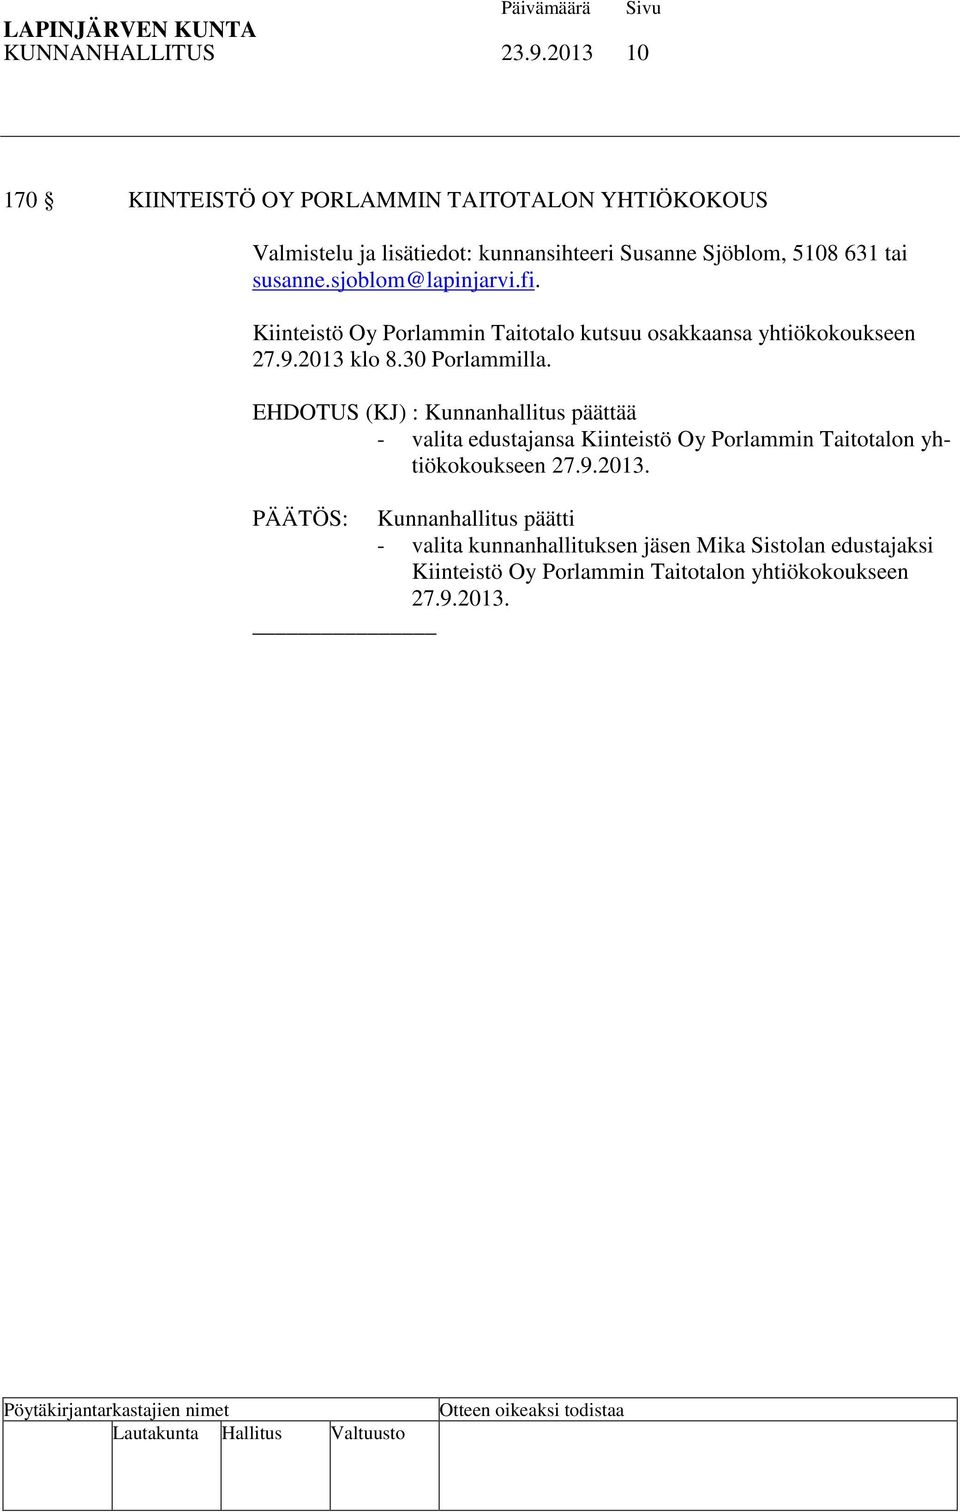 sjoblom@lapinjarvi.fi. Kiinteistö Oy Porlammin Taitotalo kutsuu osakkaansa yhtiökokoukseen 27.9.2013 klo 8.30 Porlammilla.